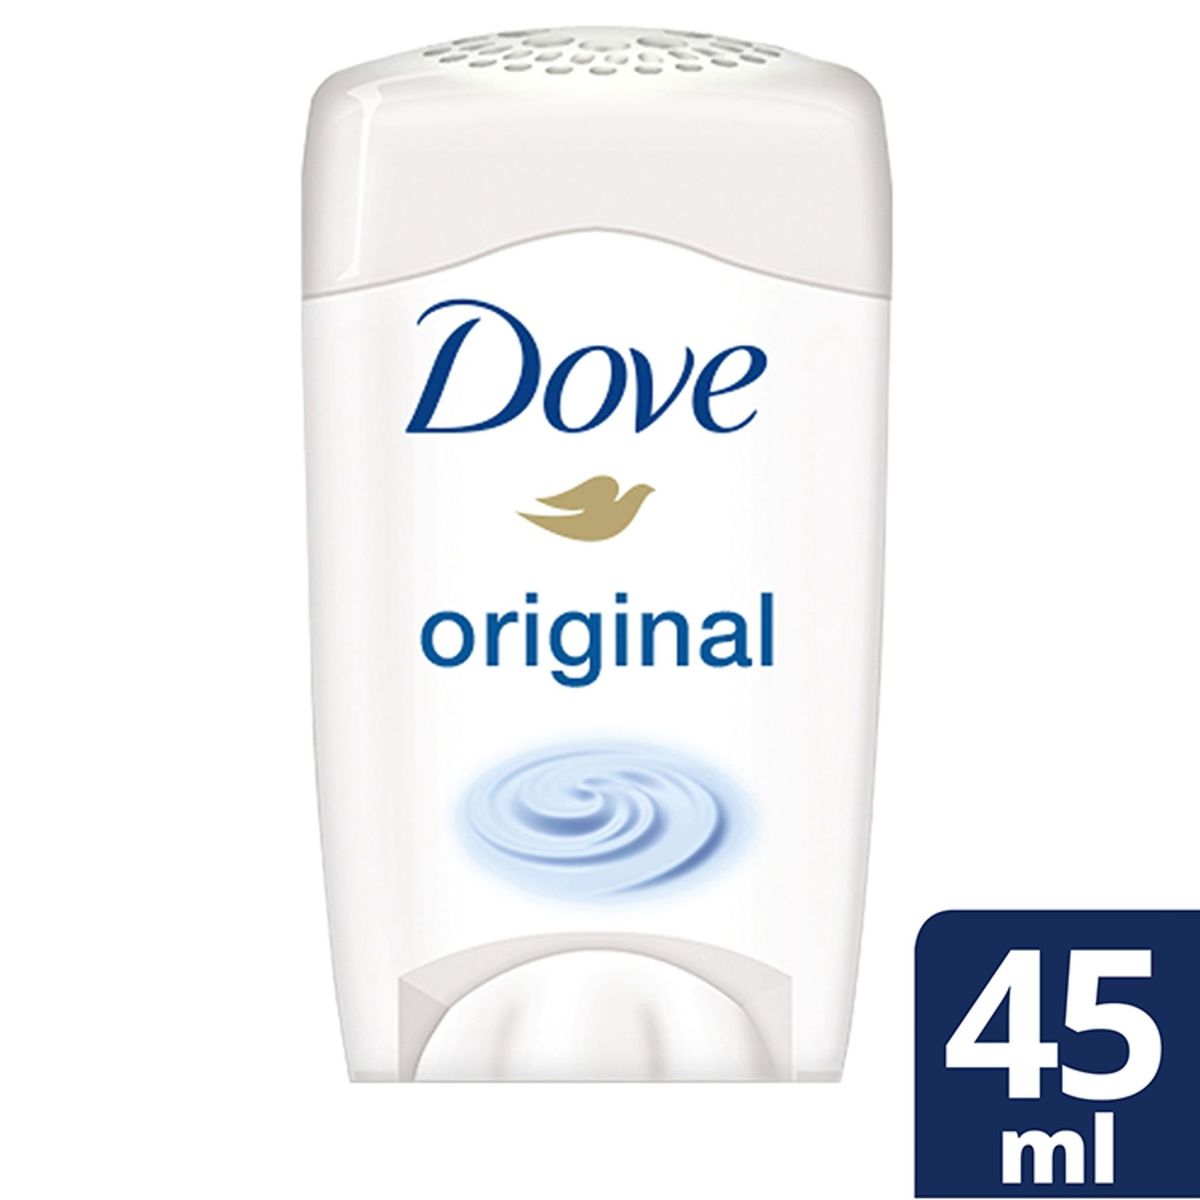 Dove Cream Deodorant Maximum Protection Original 45 ml